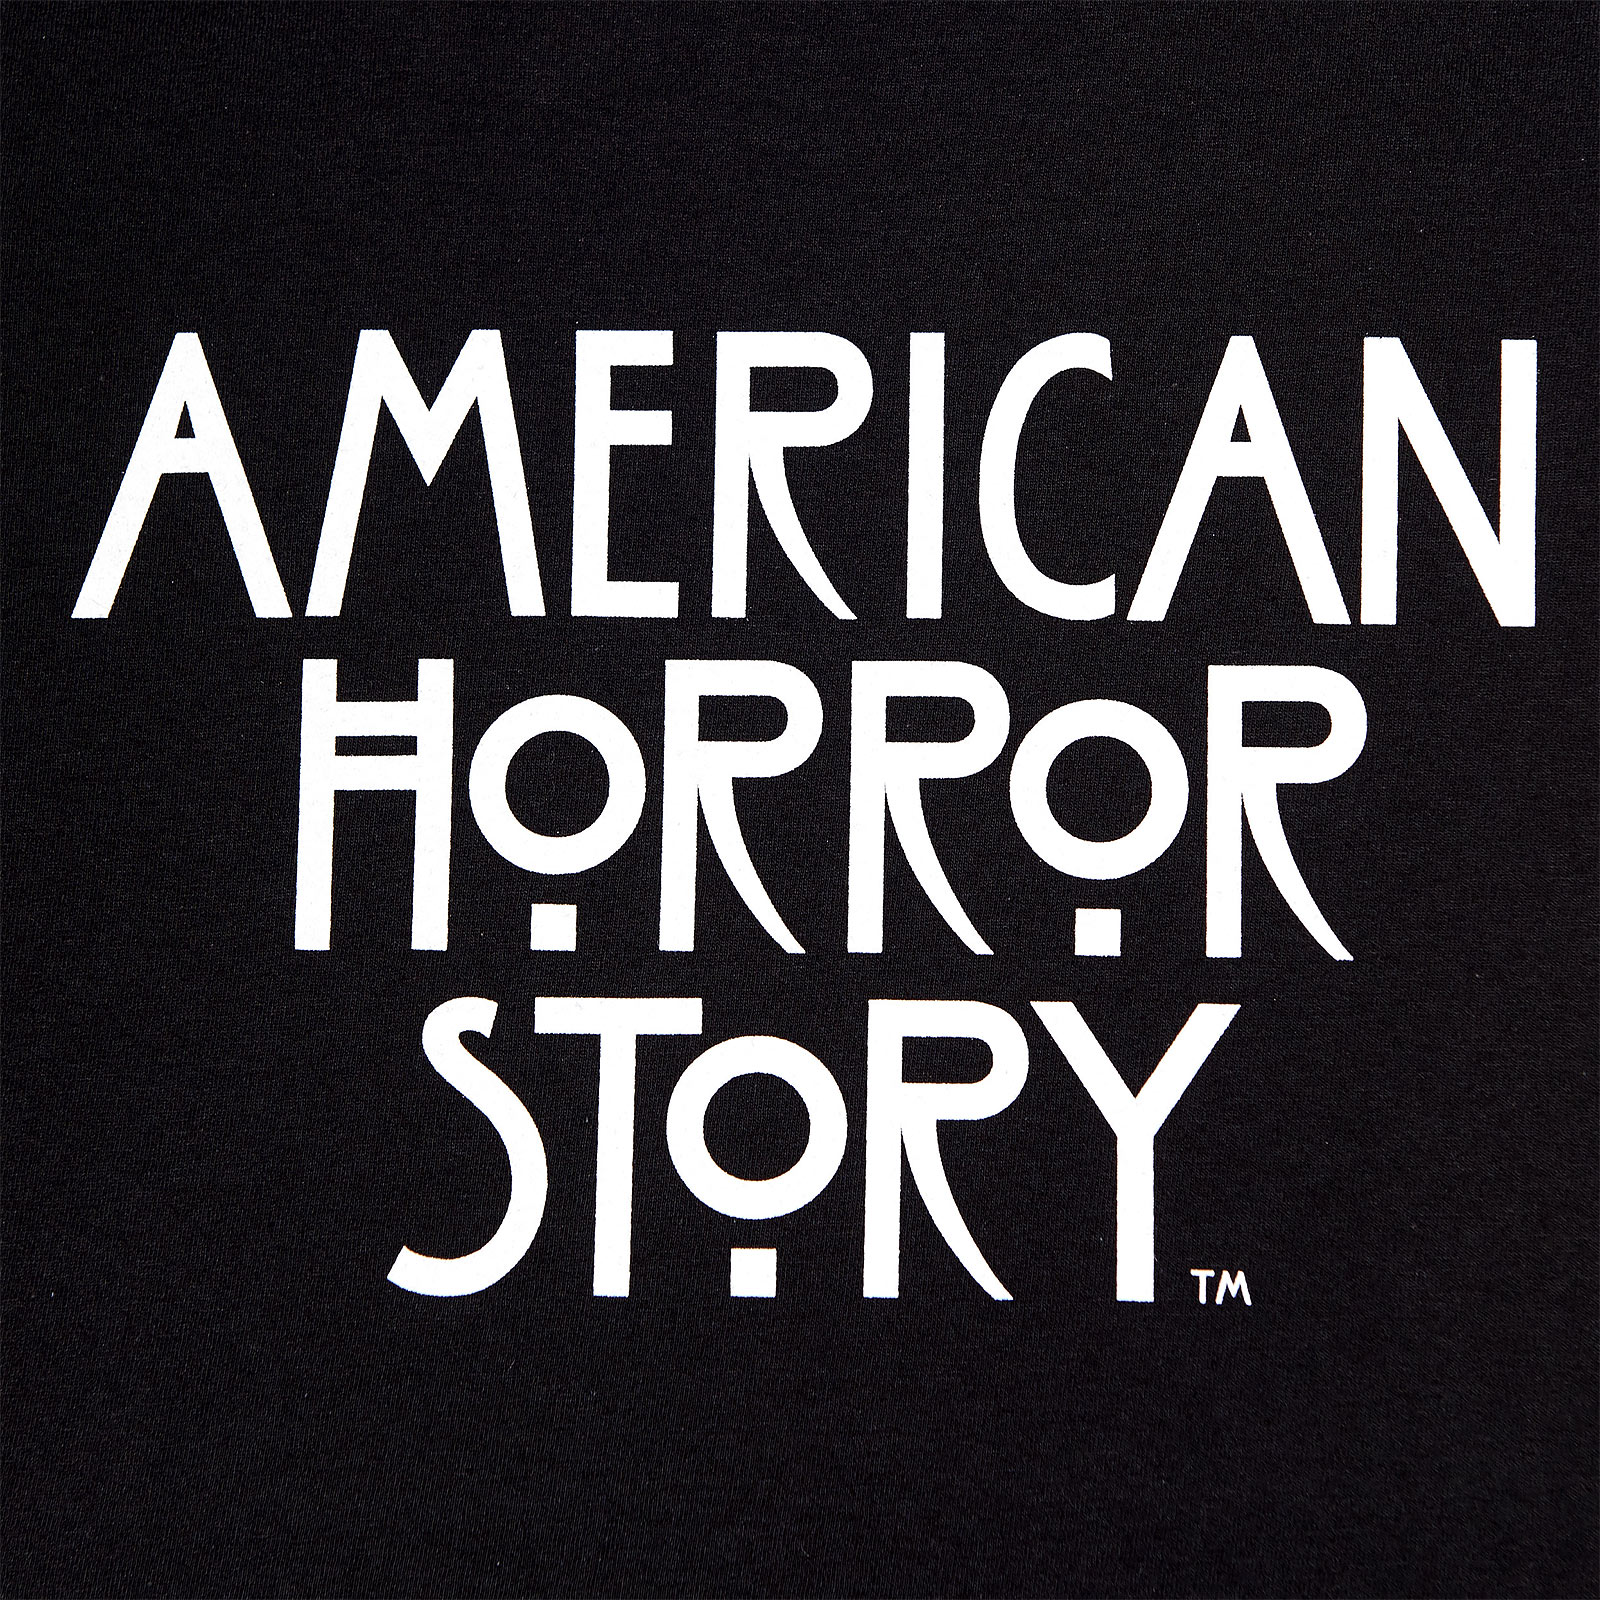 American Horror Story - T-shirt Logo Femme noir